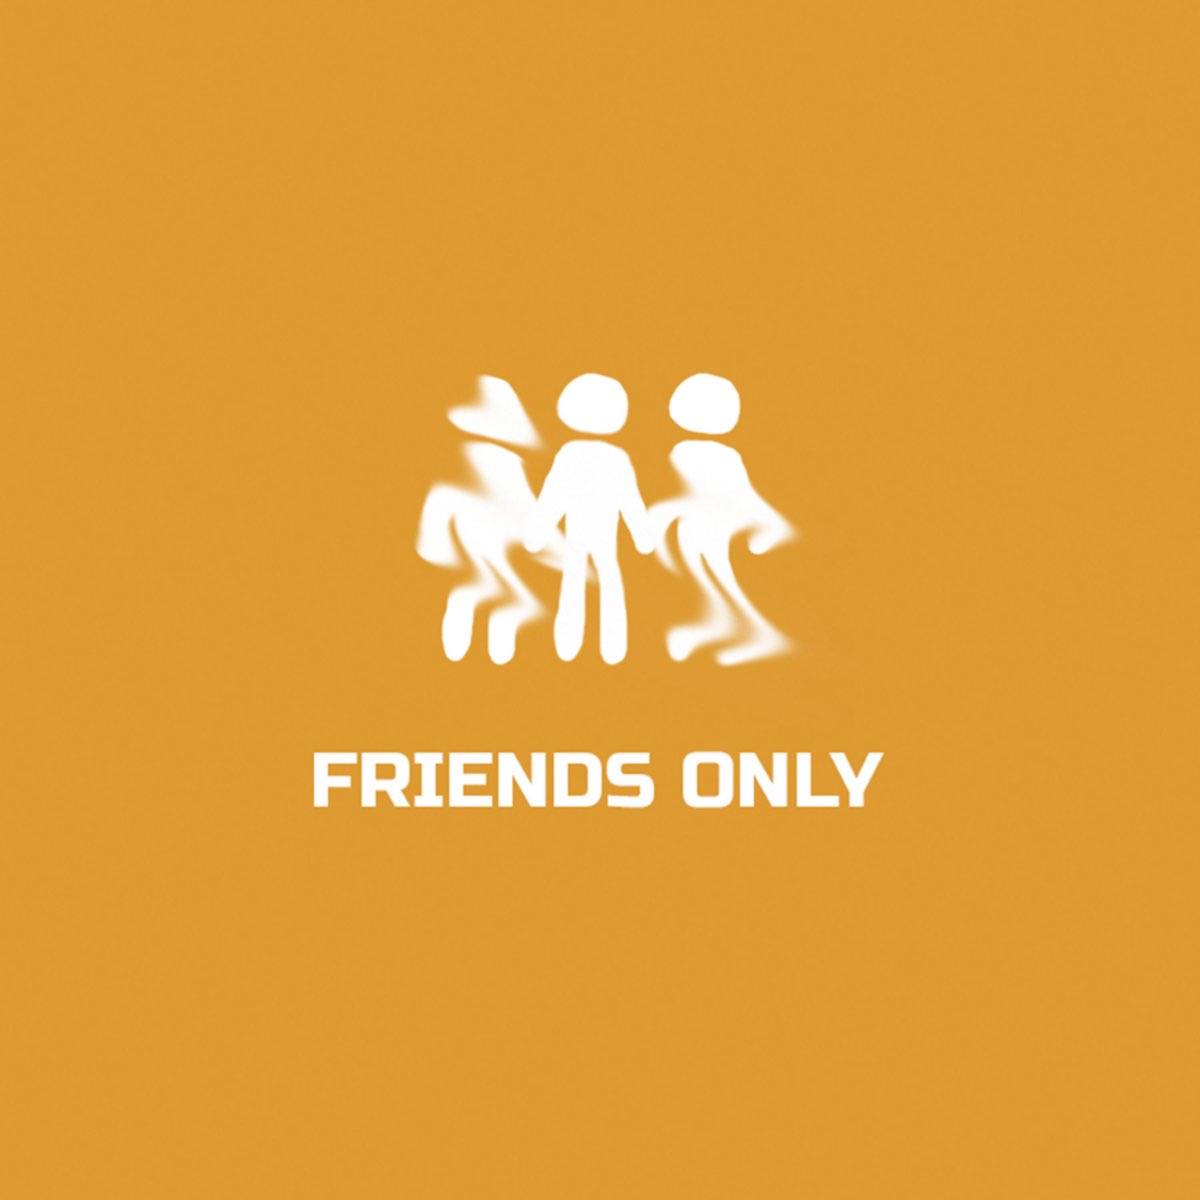 Онли френд. Онлифрендз. Only friends. V 'Fri(end)s альбом. Сюжетная линия Онли френдс.